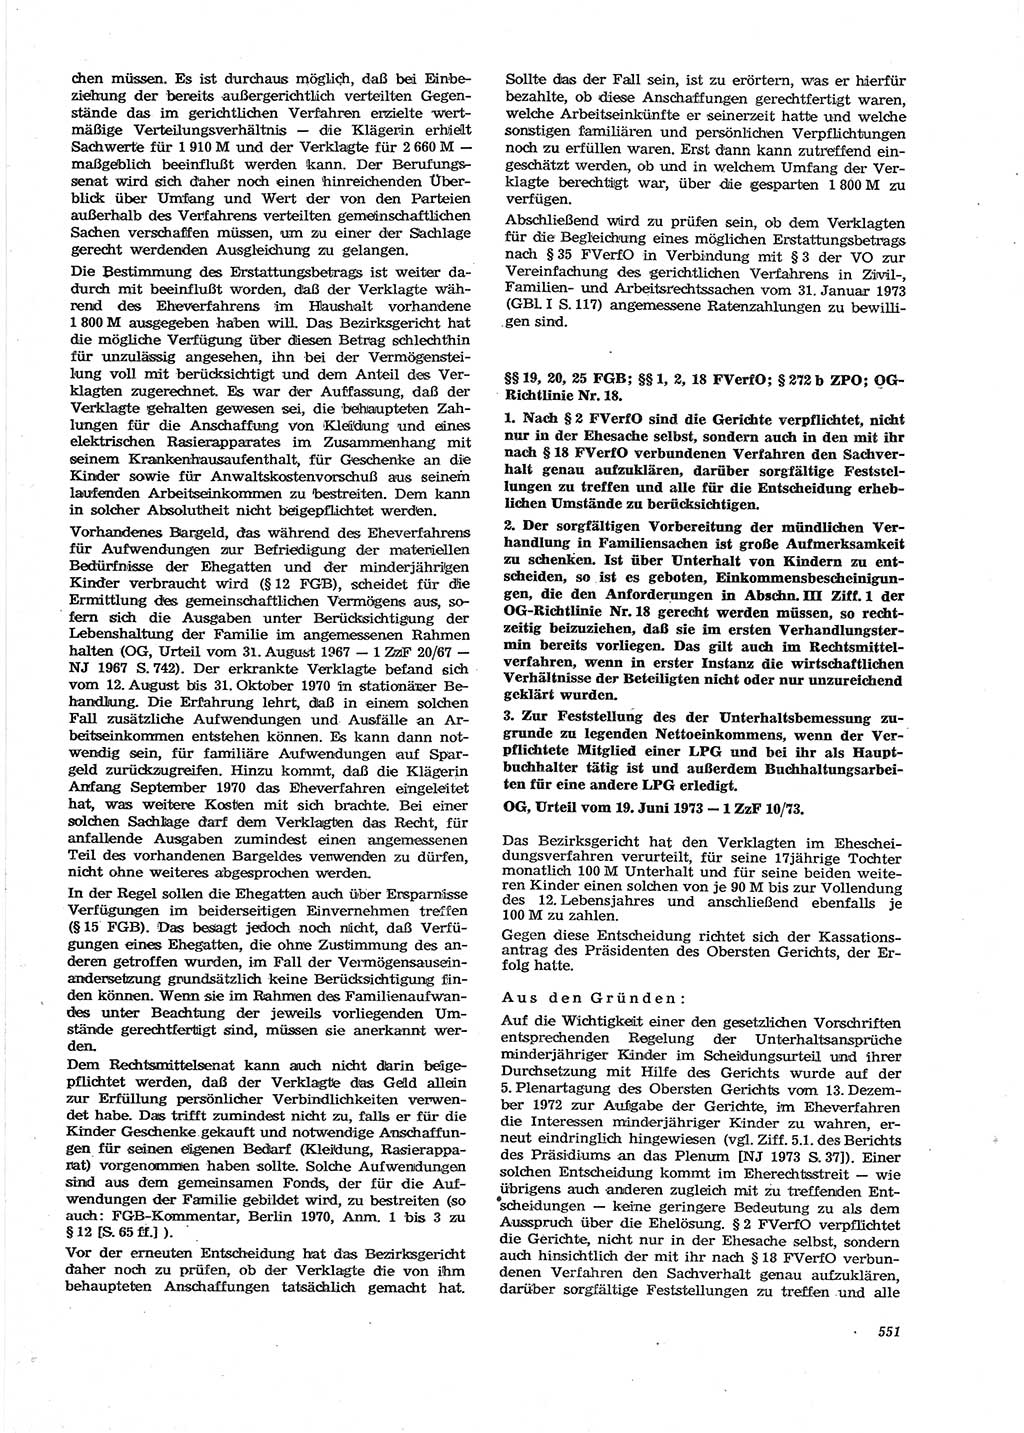 Neue Justiz (NJ), Zeitschrift für Recht und Rechtswissenschaft [Deutsche Demokratische Republik (DDR)], 27. Jahrgang 1973, Seite 551 (NJ DDR 1973, S. 551)